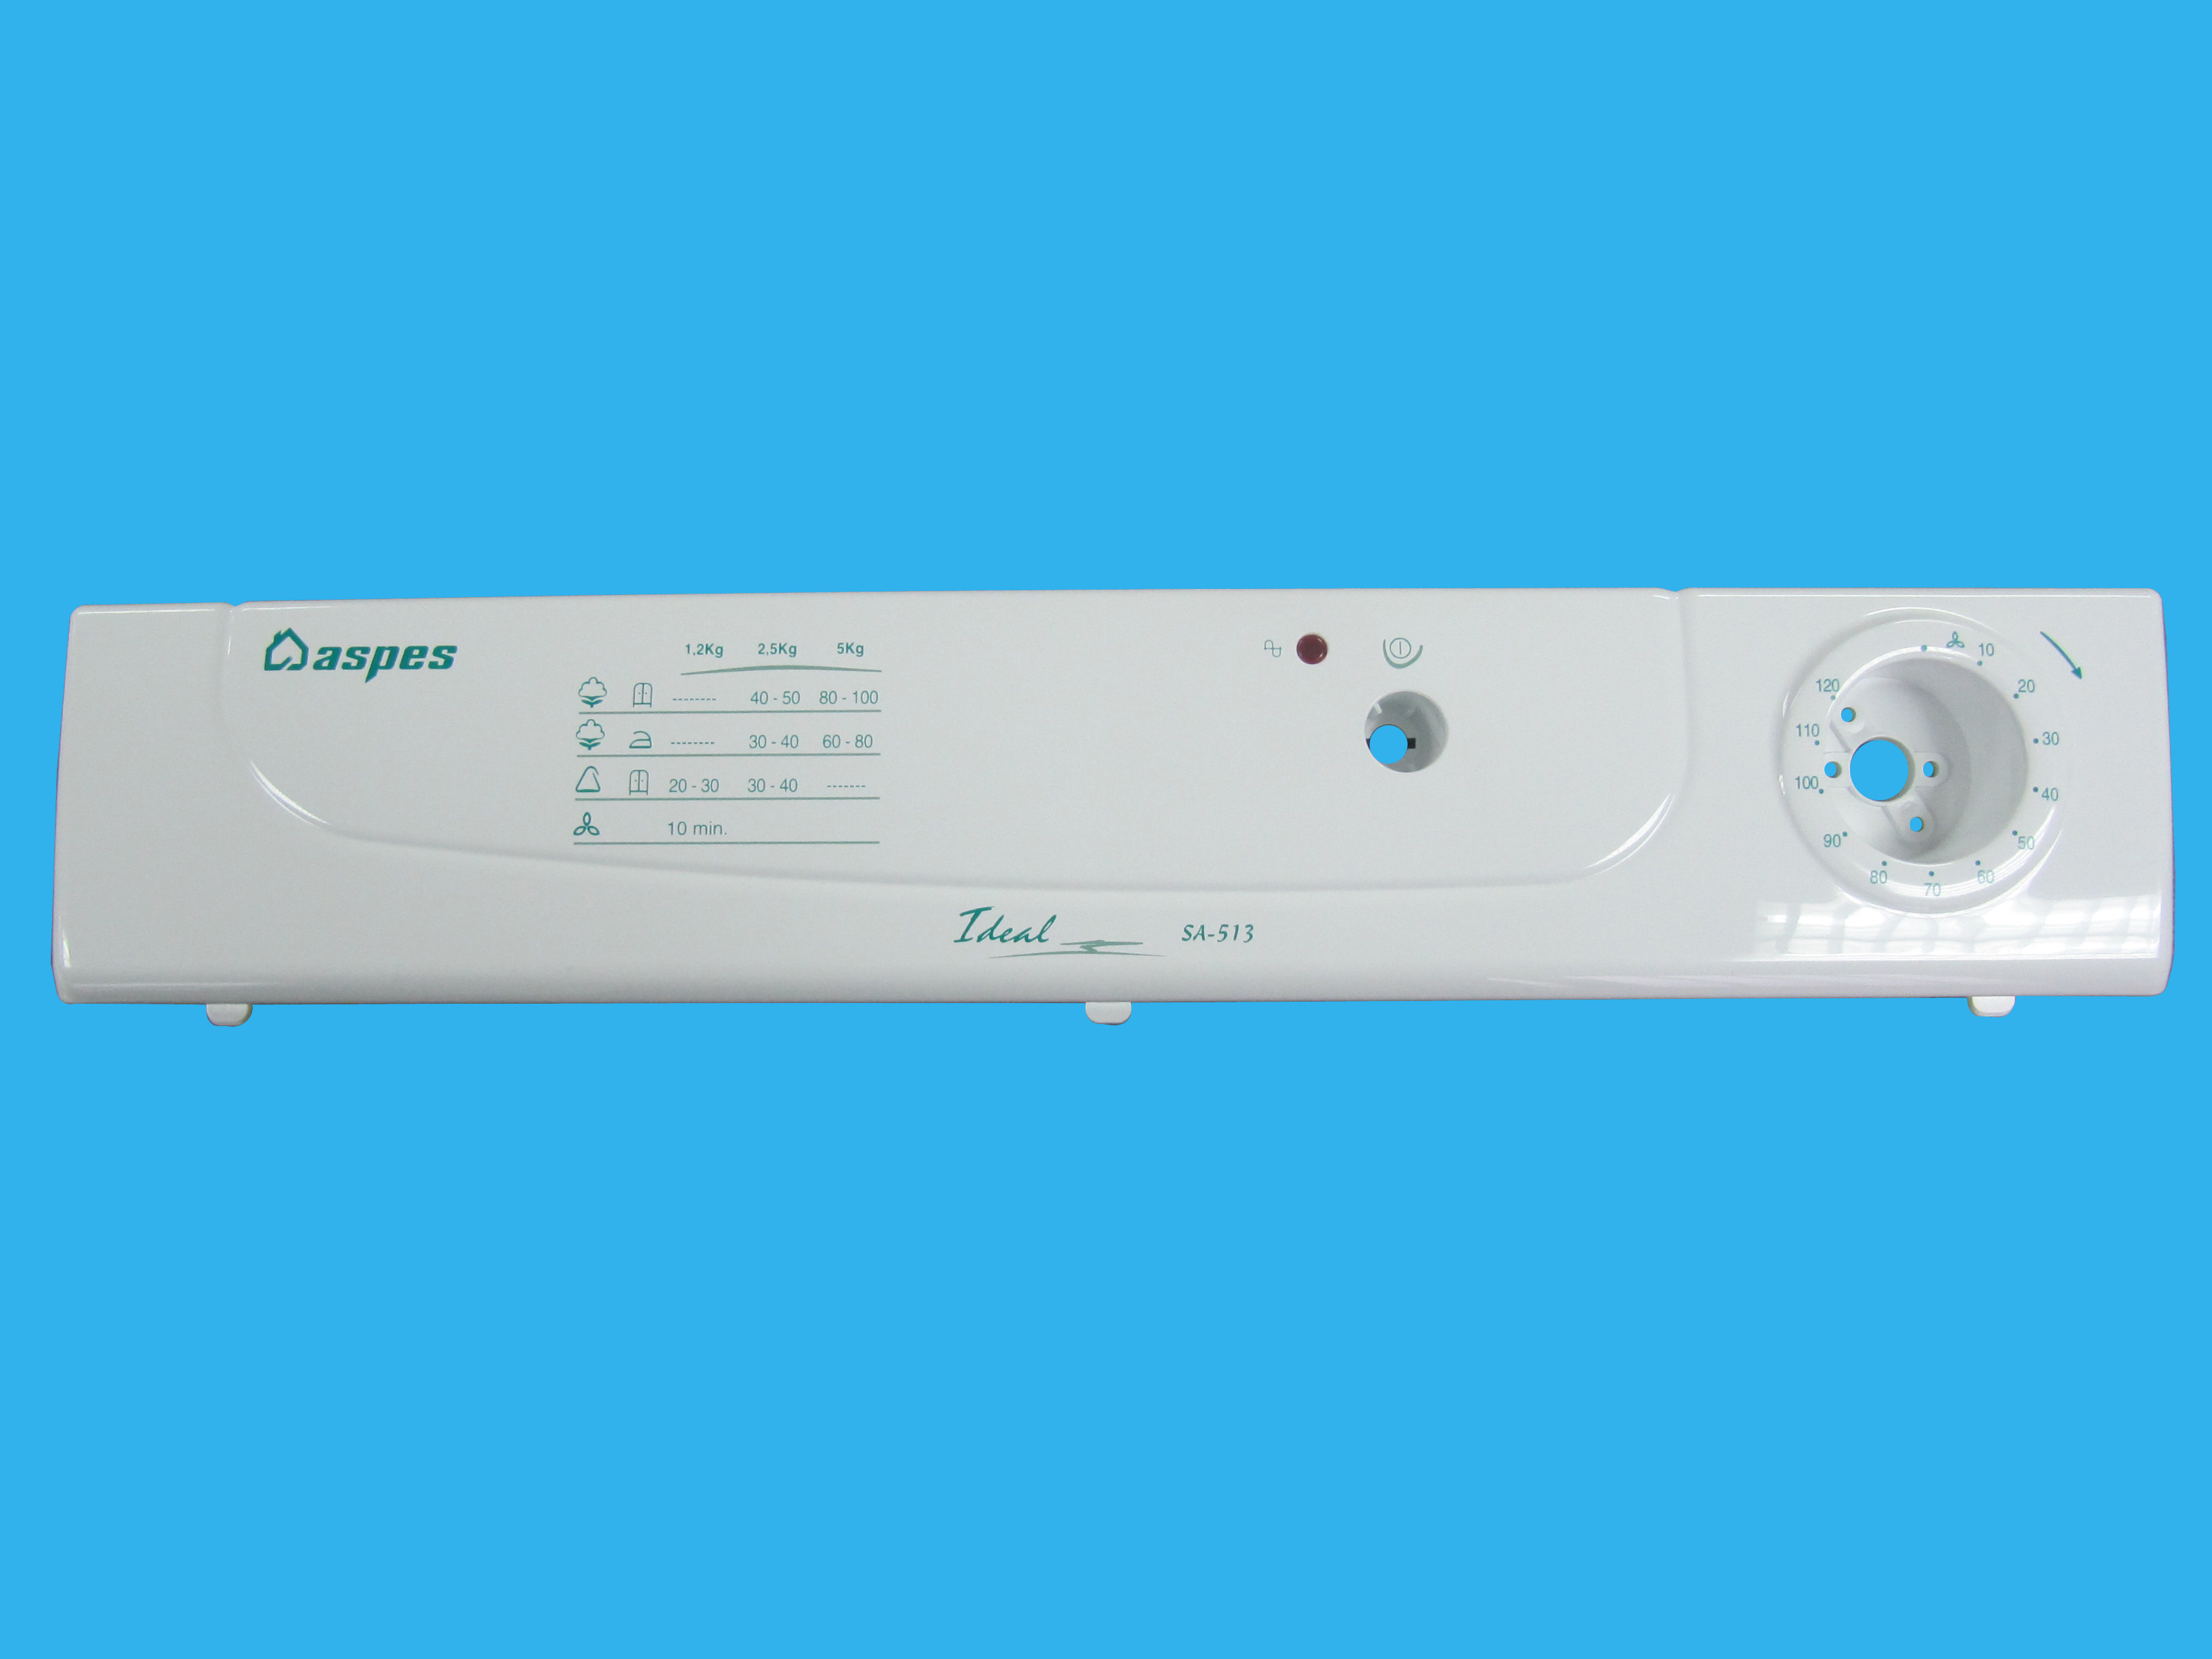 Panel mandos secadora Aspes id - 21FA0152 - FAGOR